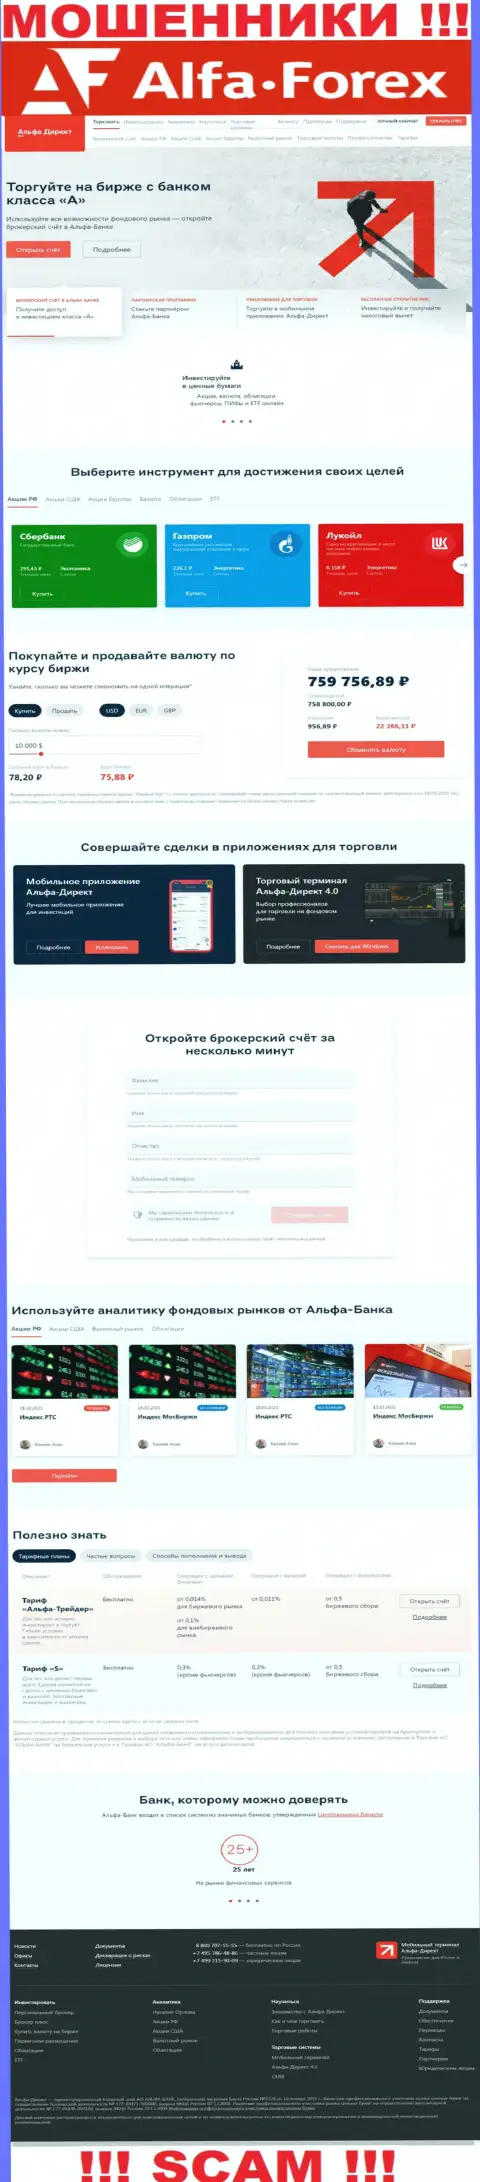 Alfadirect Ru - официальный информационный сервис жуликов АО АЛЬФА-БАНК